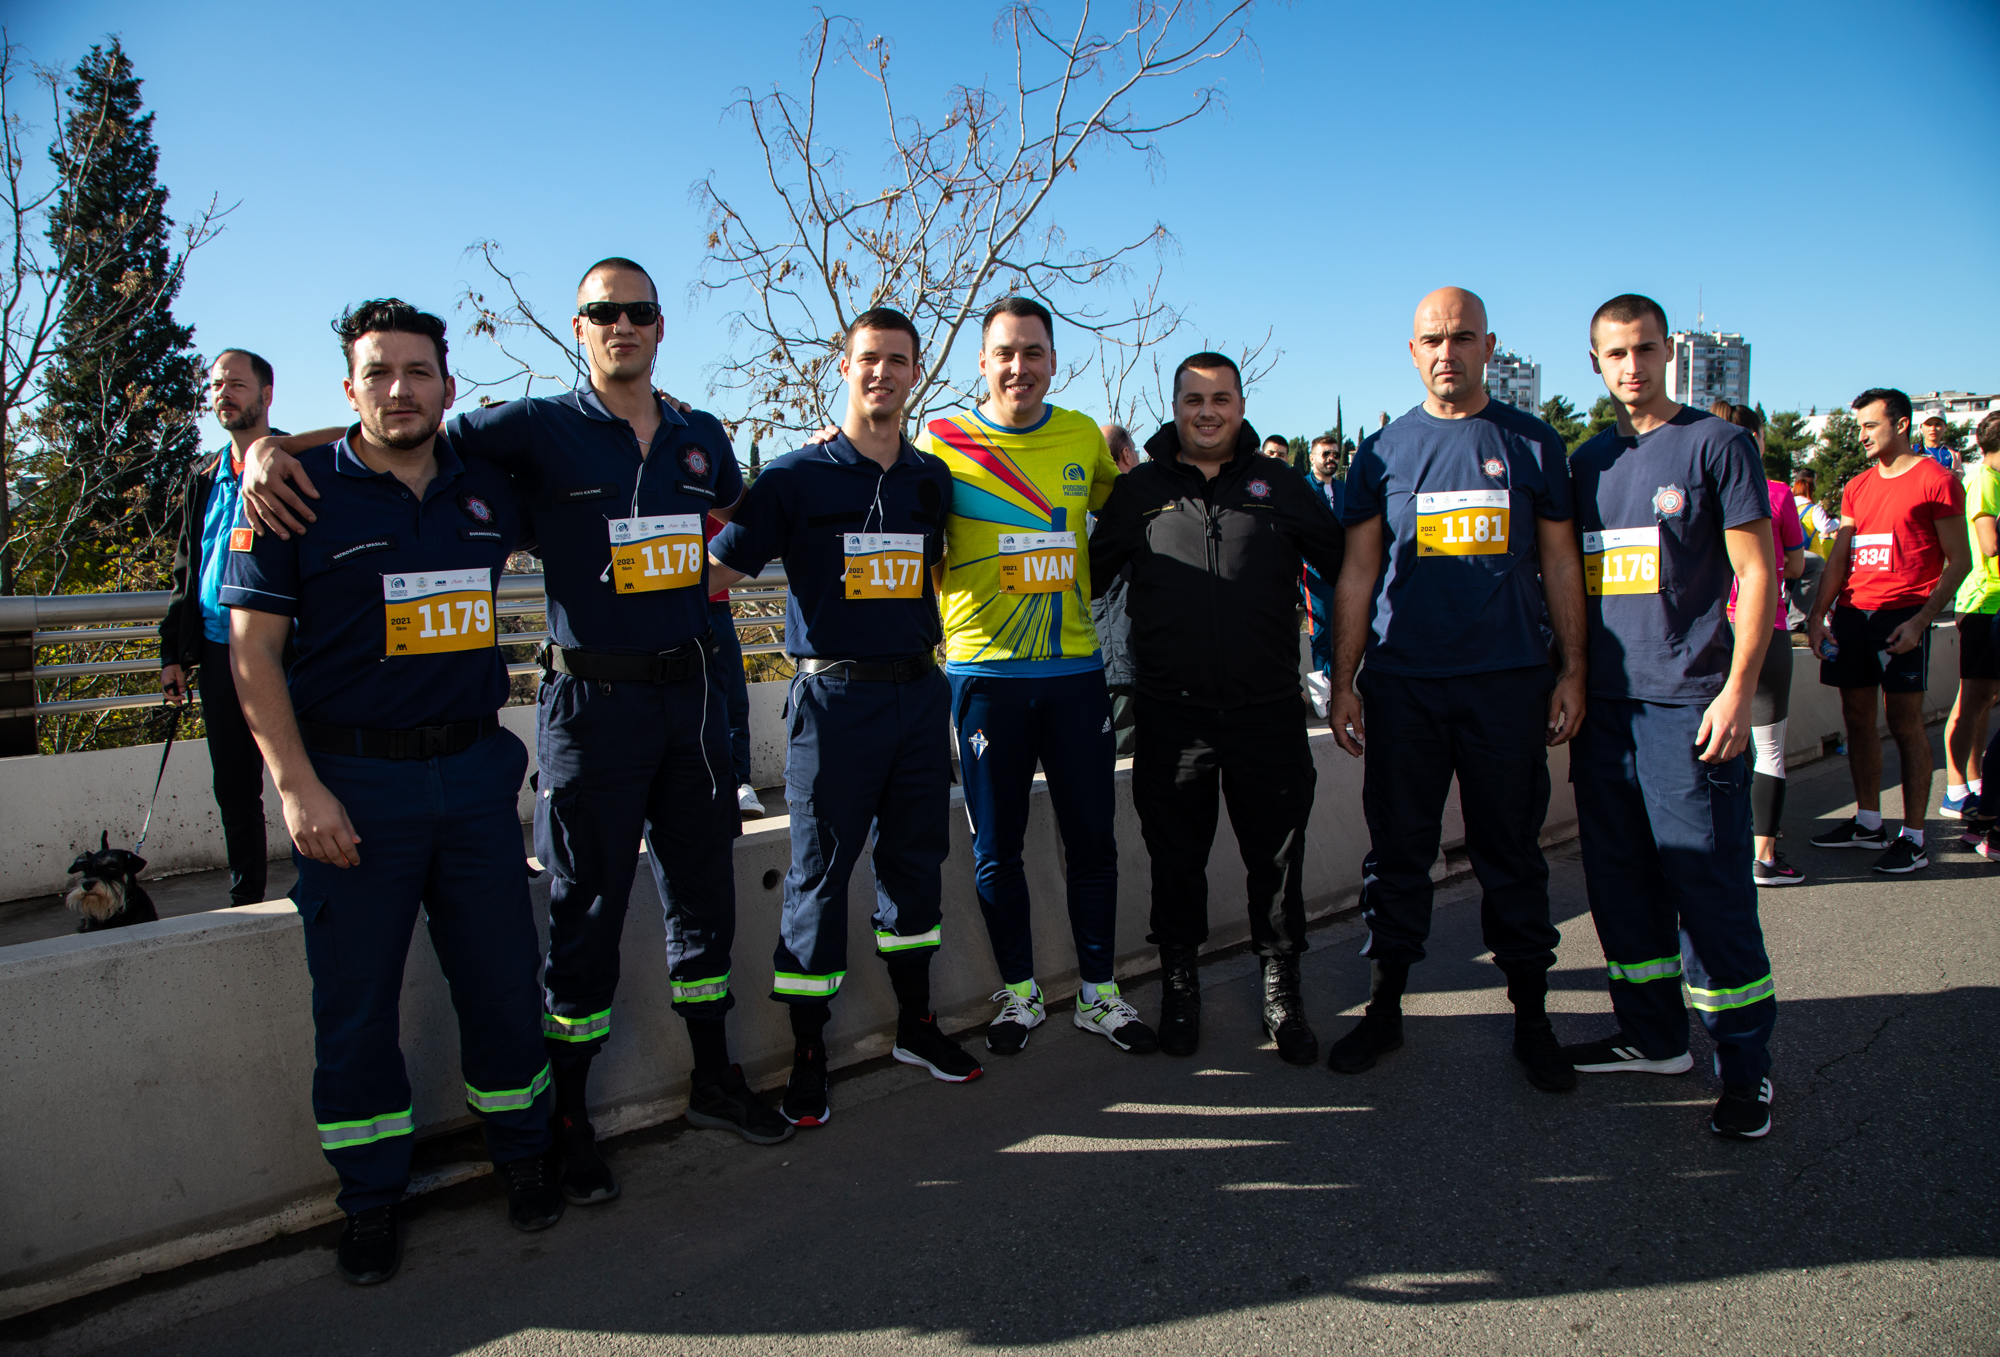 Fenomenalnom maratonskom trkom obilježili premijerno izdanje Podgorica Millennium run-a